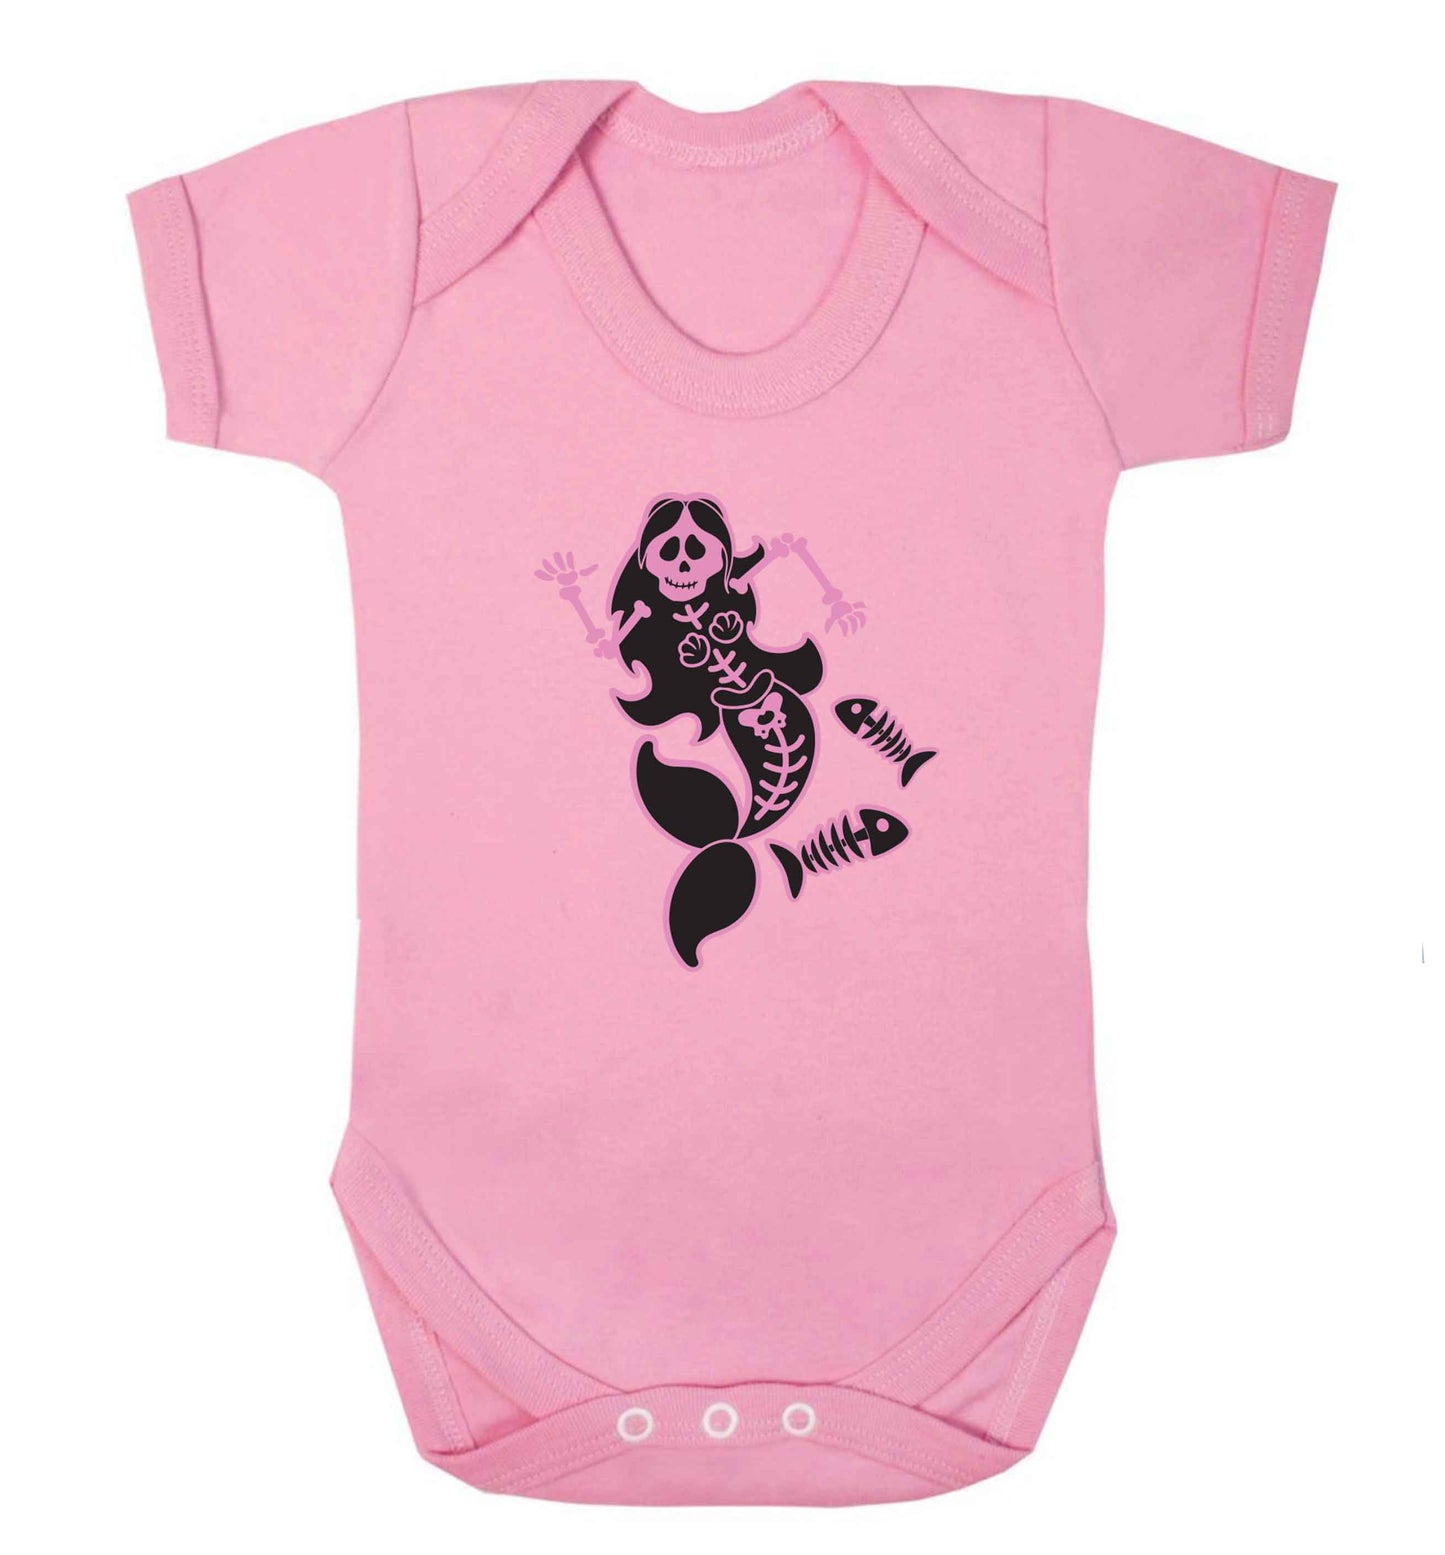 Skeleton mermaid baby vest pale pink 18-24 months